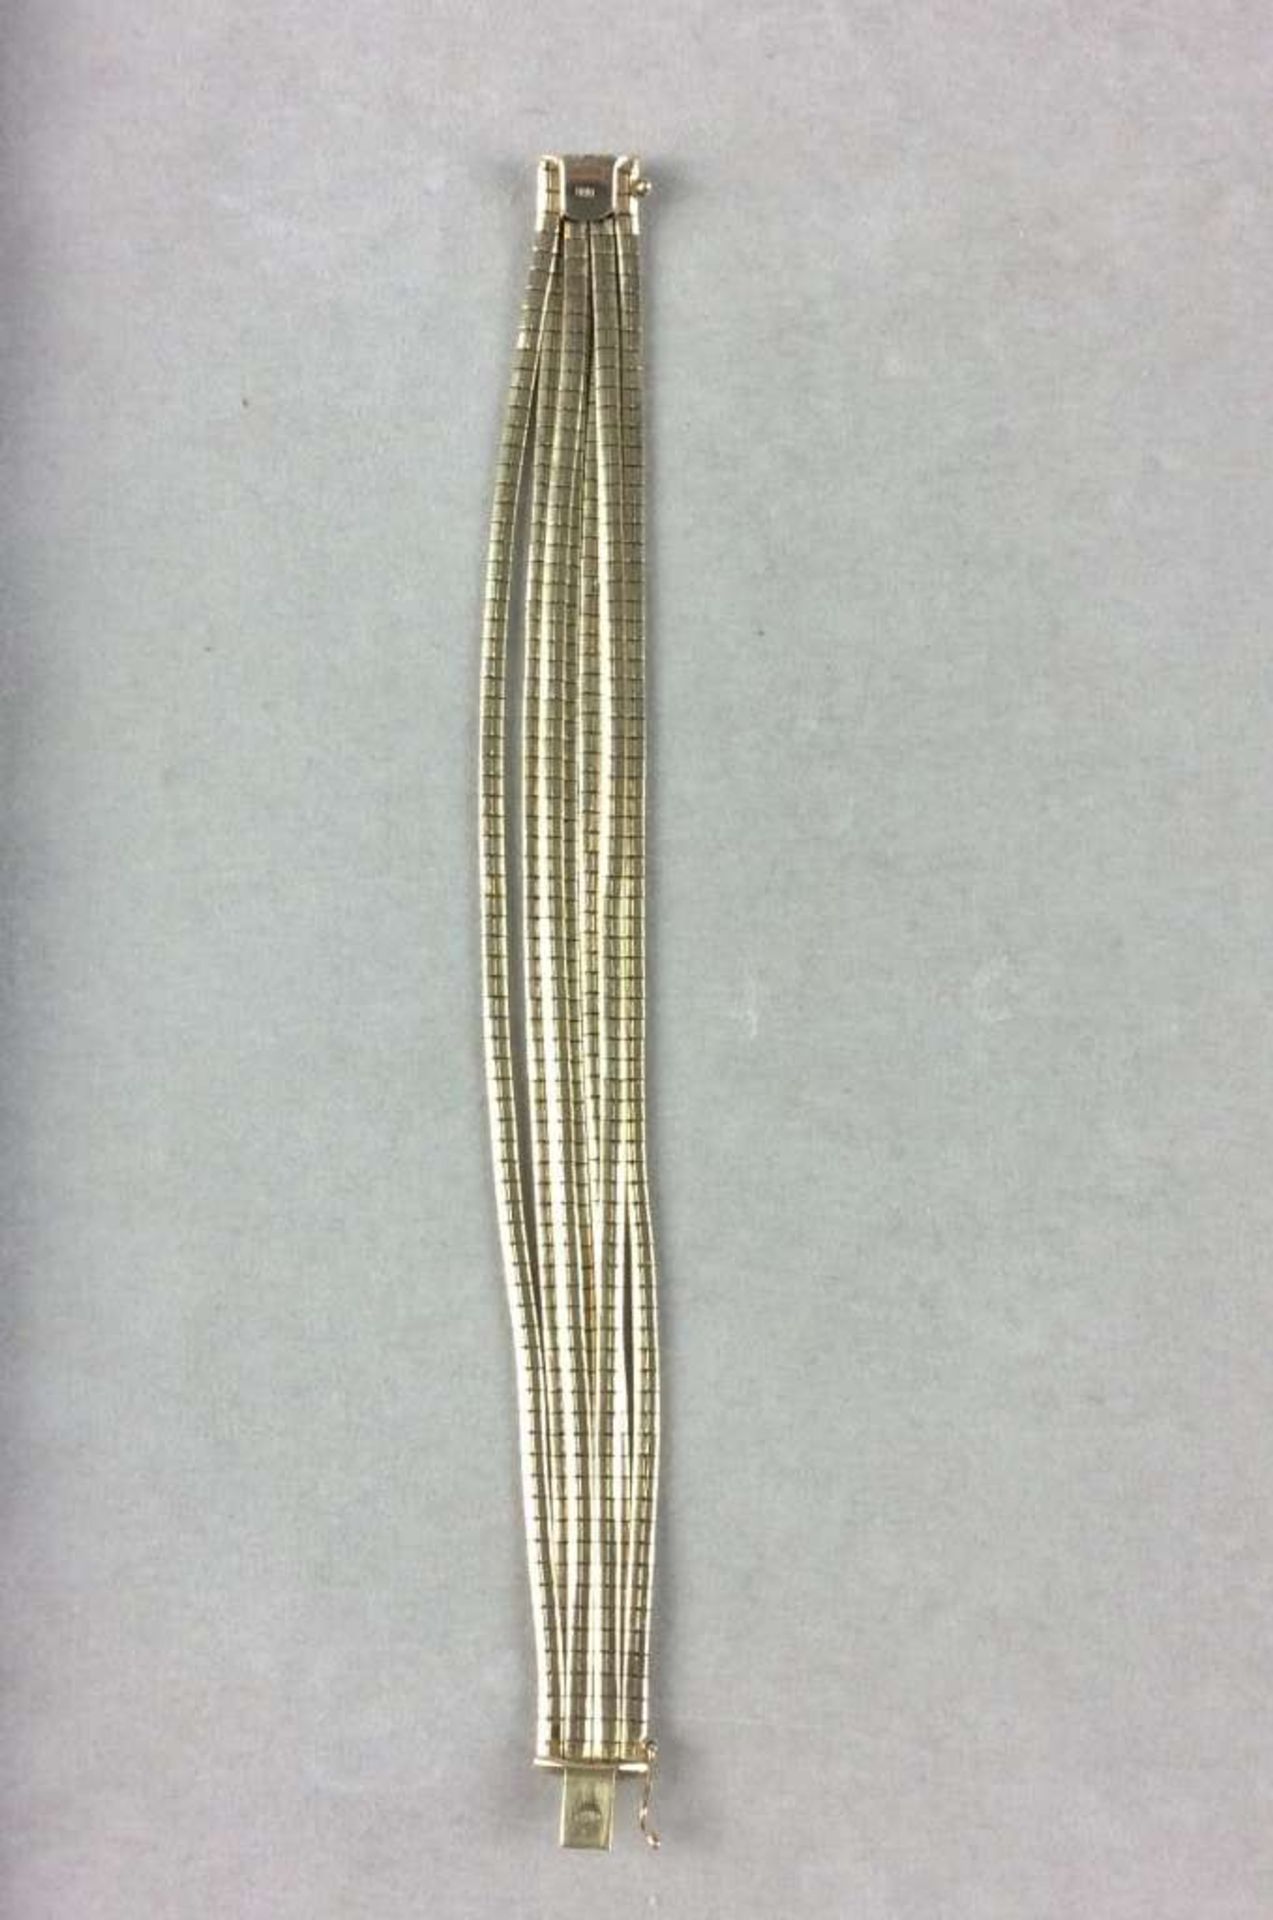 Armband, 585er-Gelbgold mit 7 flach gearbeiteten Stegen. Breite: ca. 2 cm, Länge: 20 cm, - Image 2 of 3